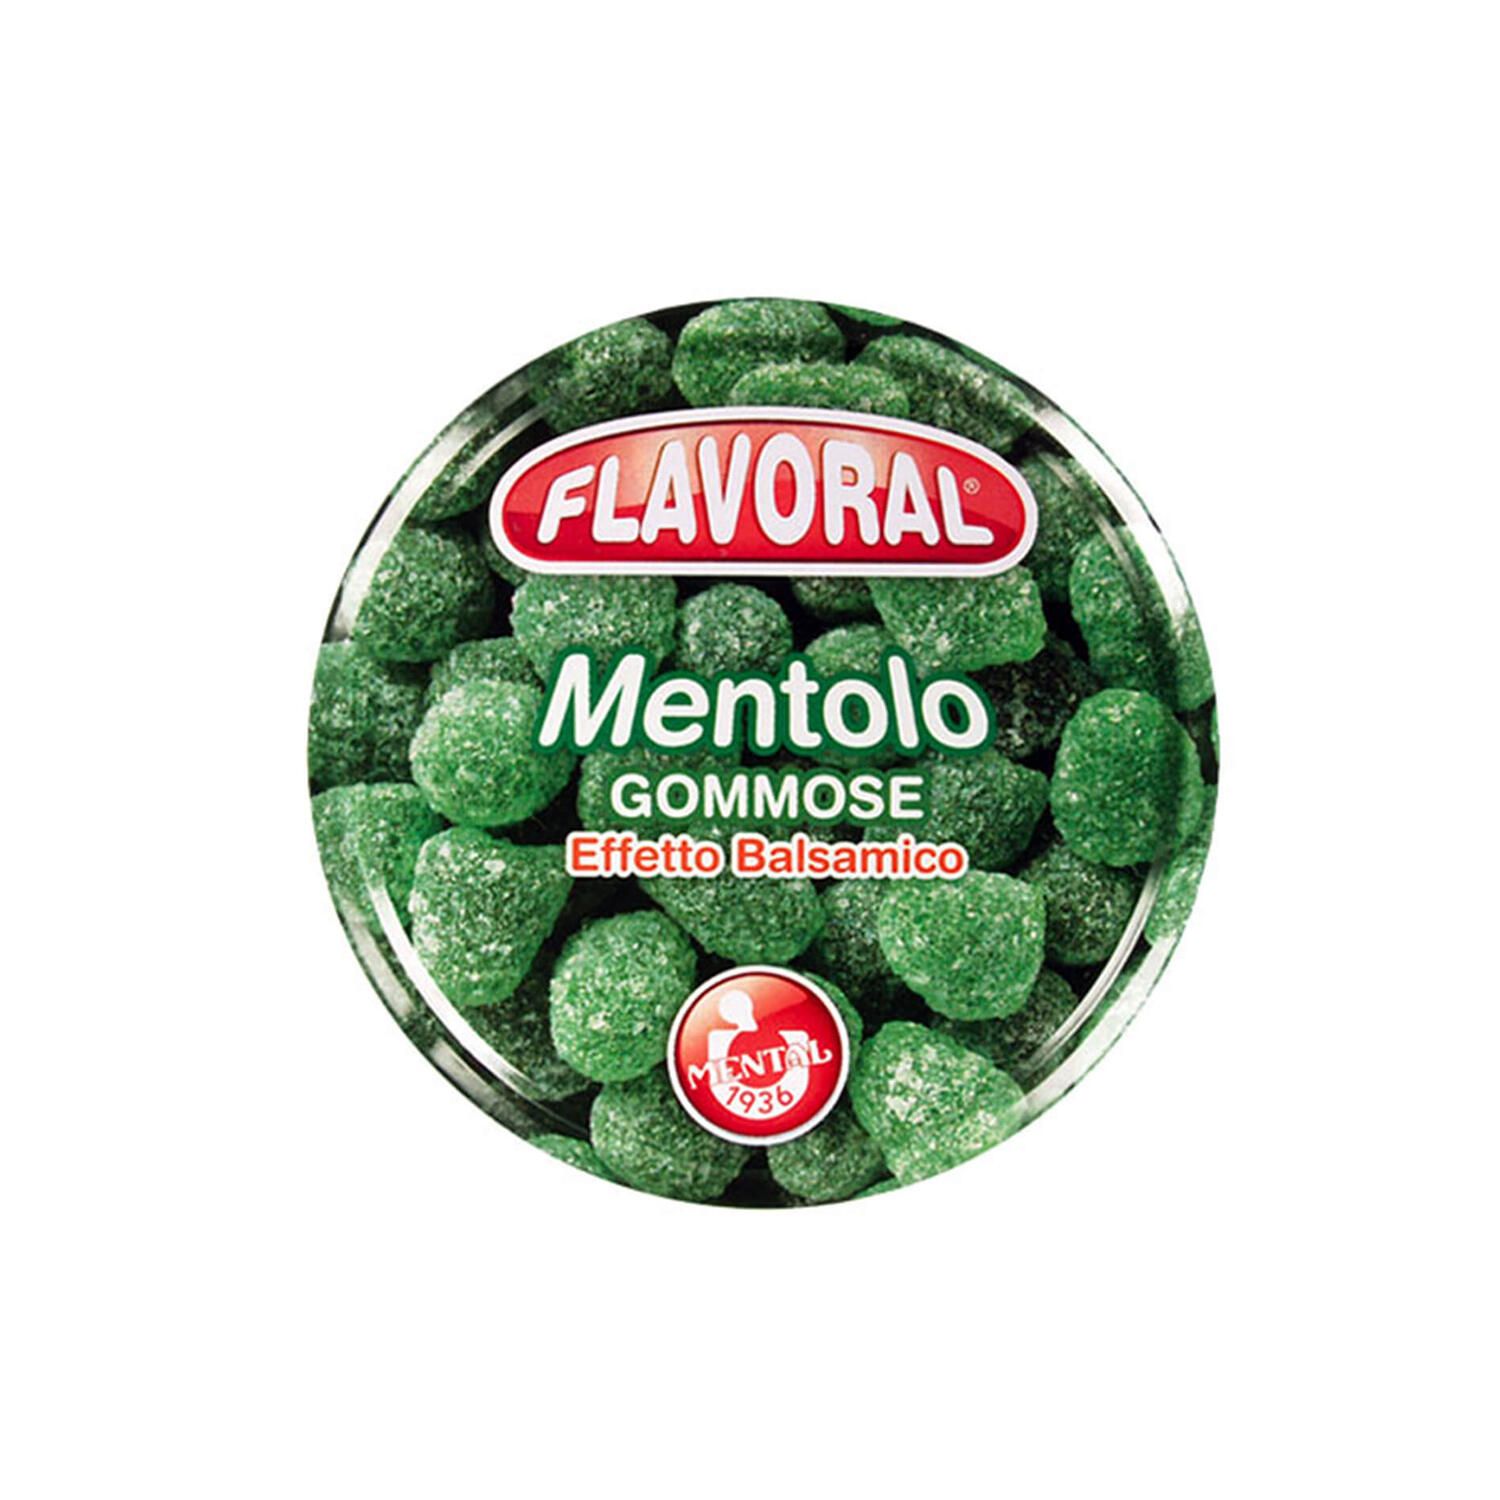 Flavoral Mentolo - Pacchetto Singolo - Flavoral